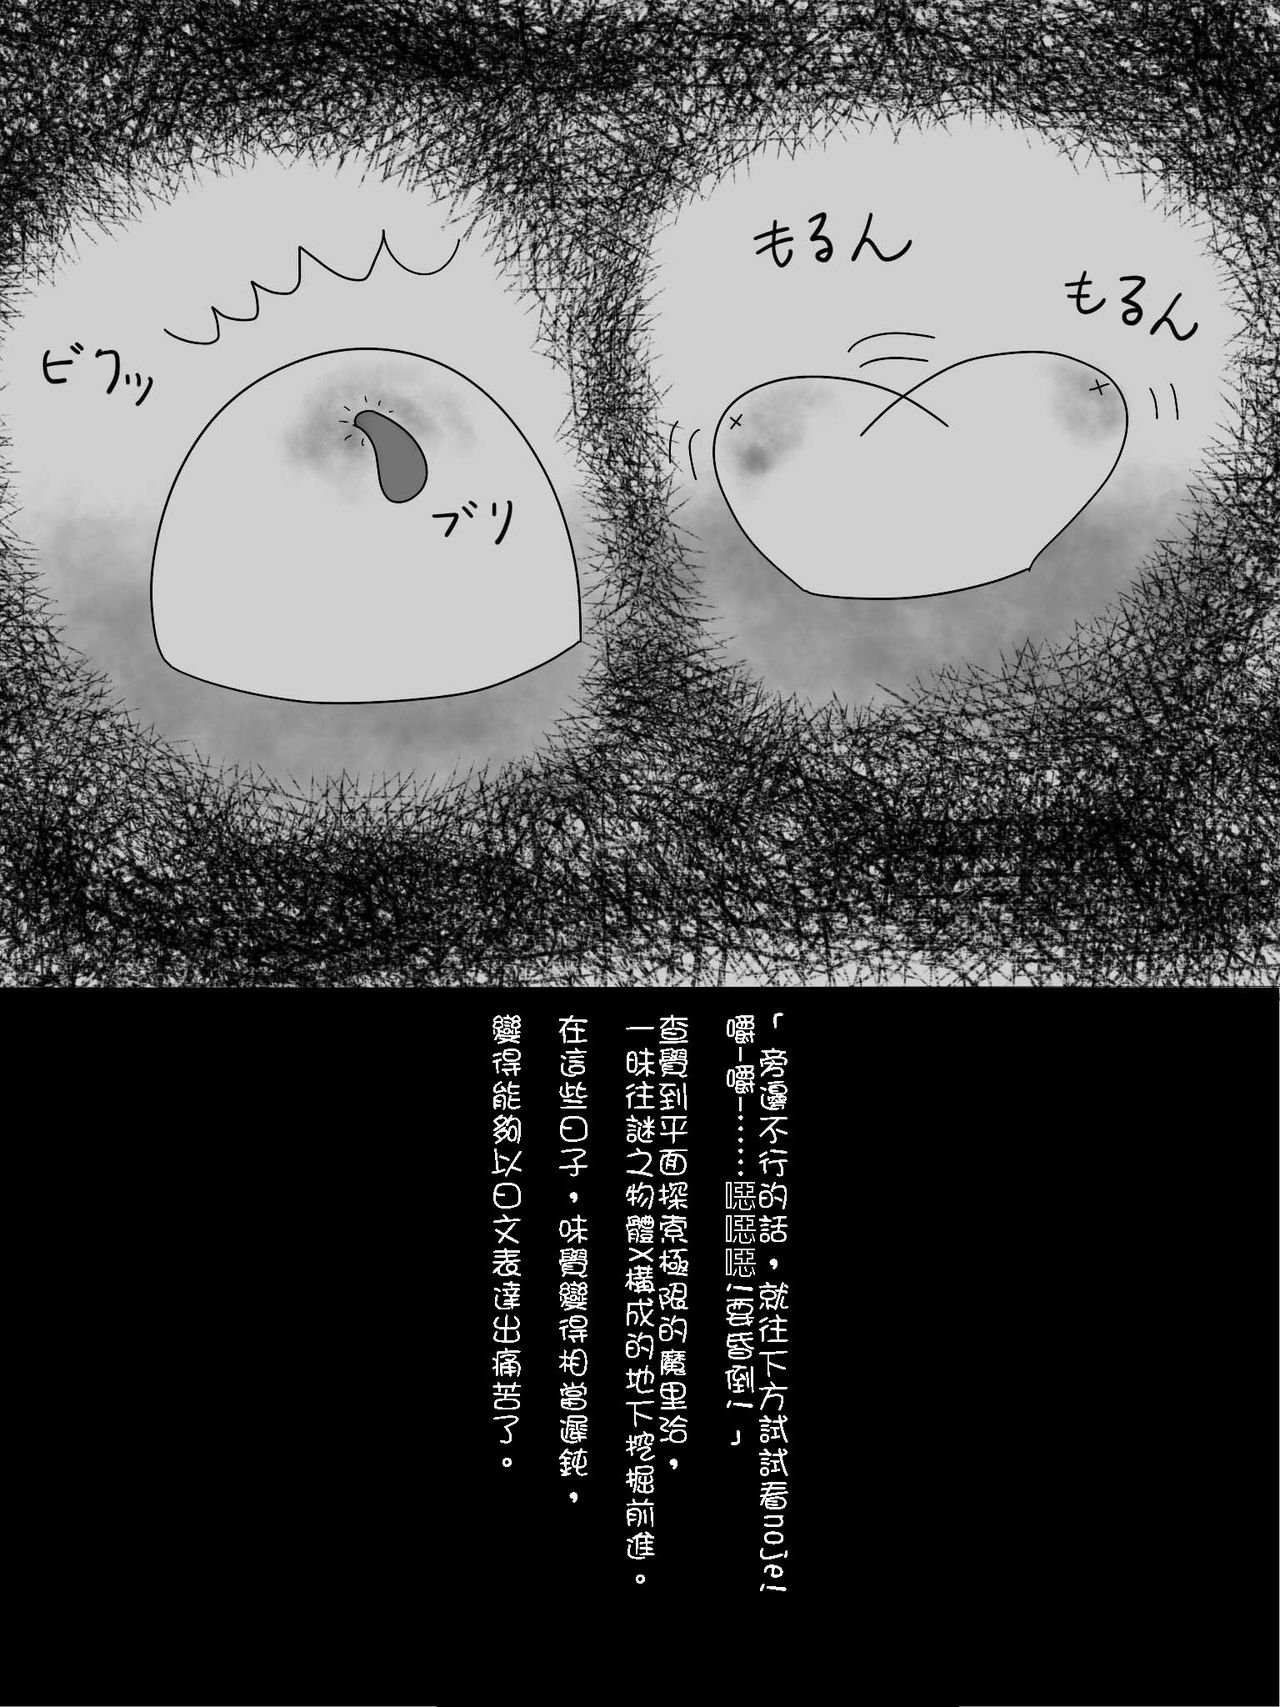 [埋没法] まりちゃの居場所 （Chinese) 12